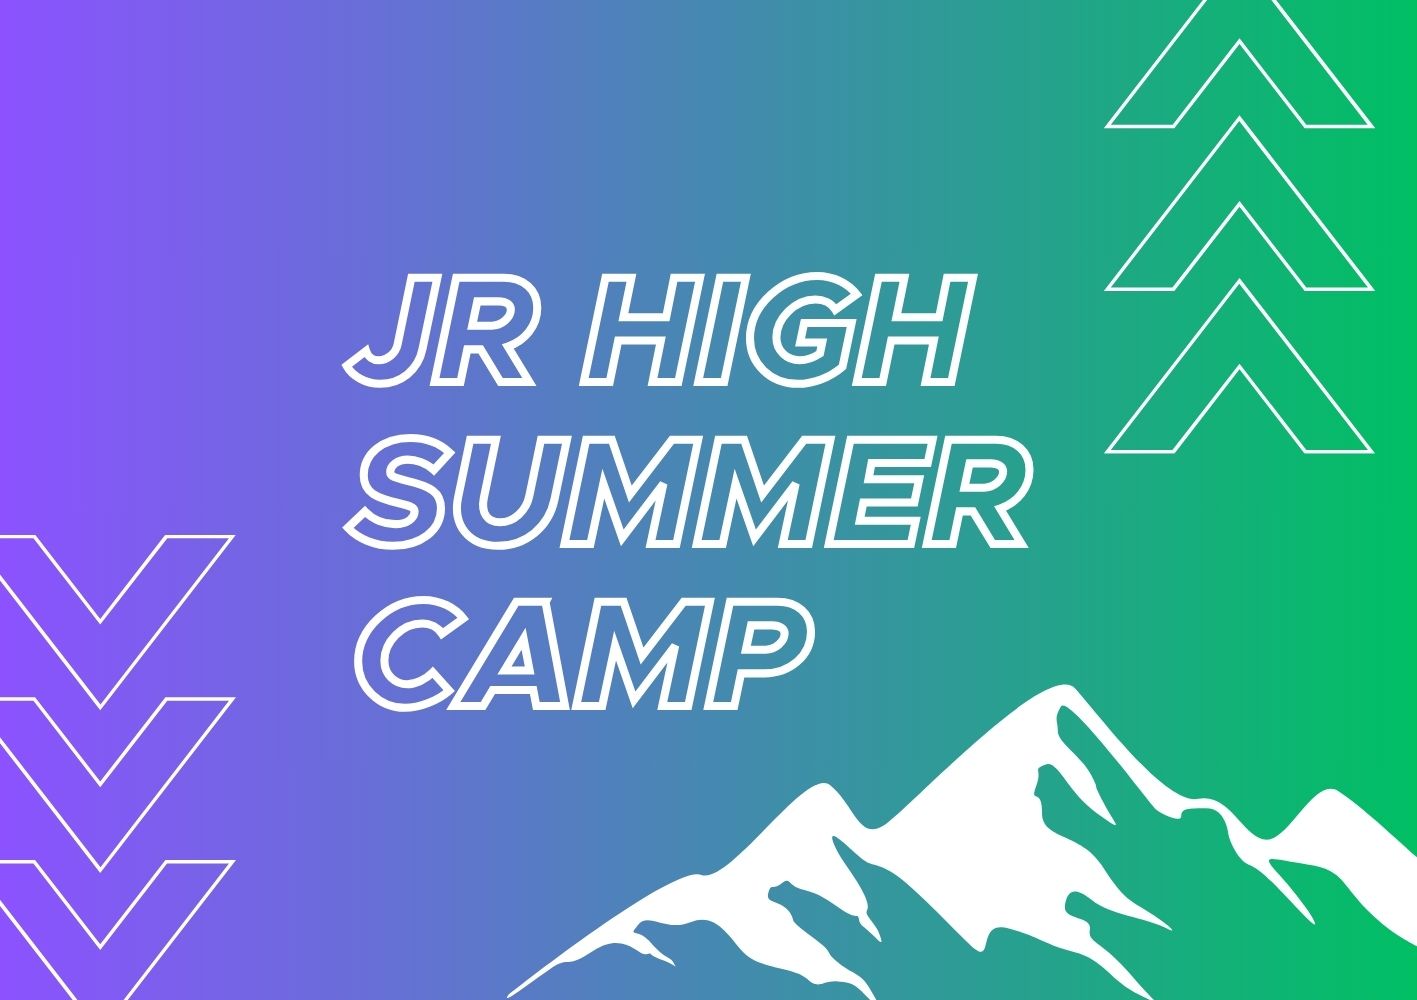 JR HIGH SUMMER CAMP